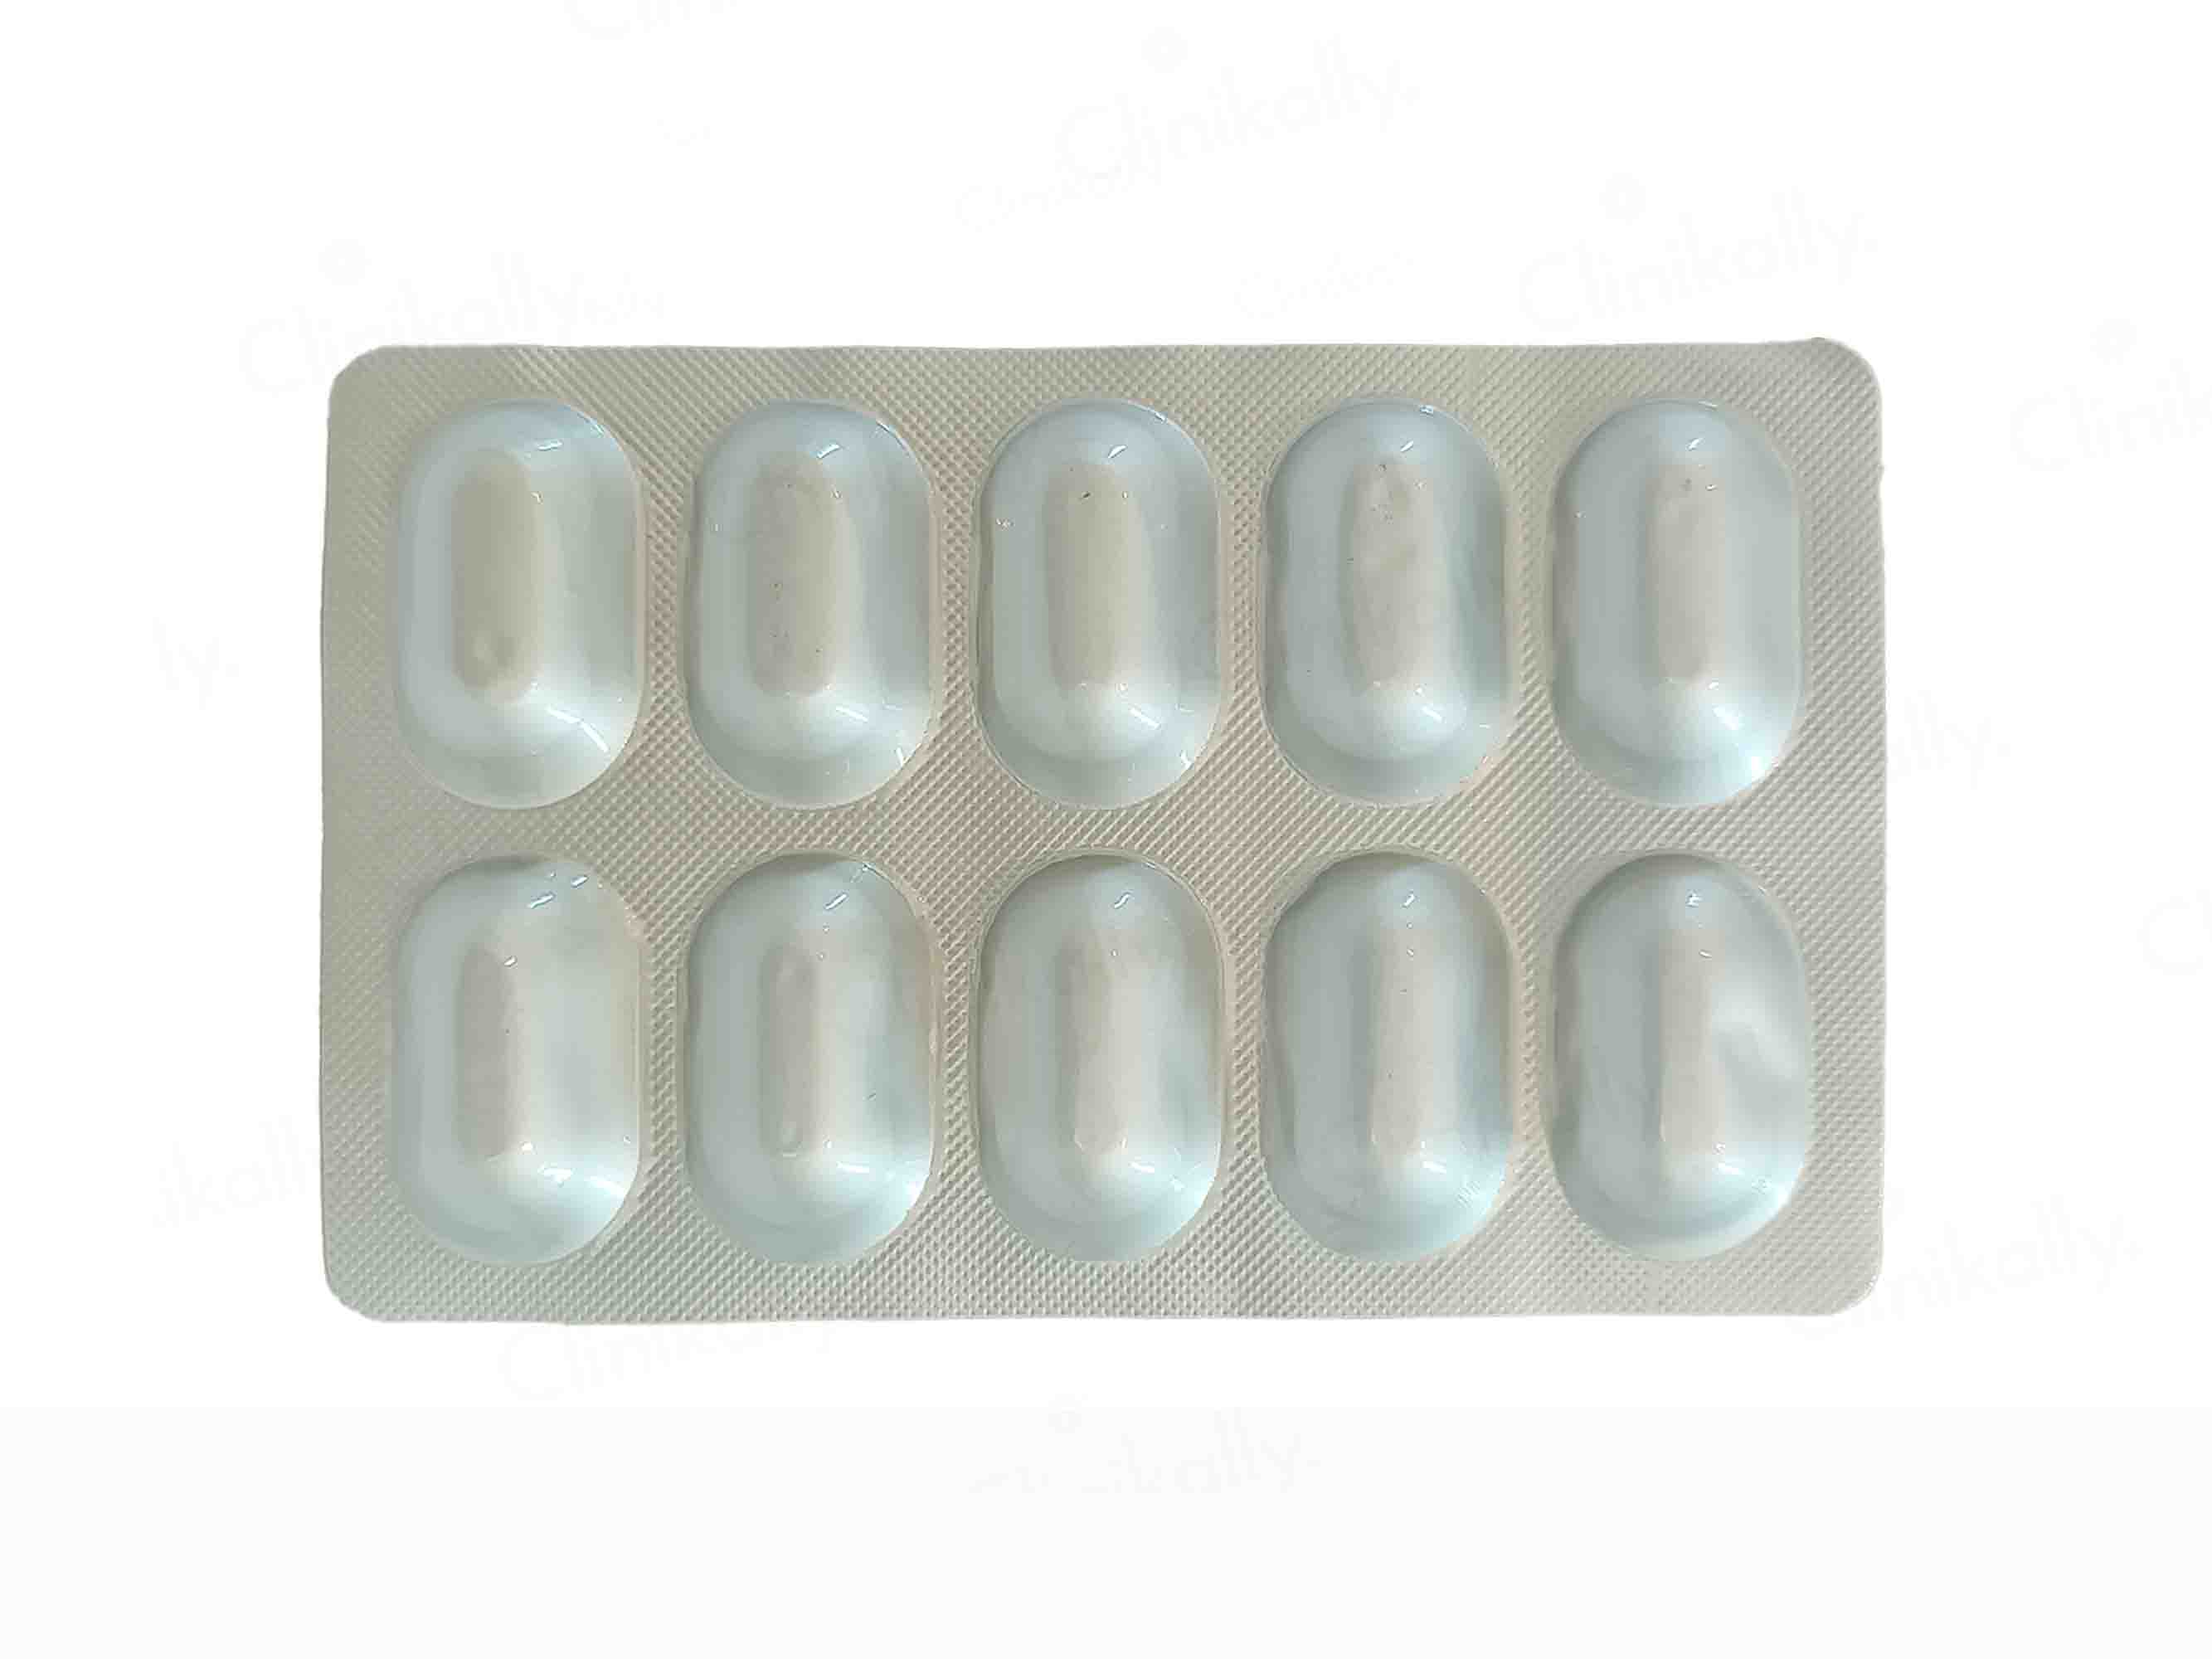 Acnosis Tablets - Clinikally